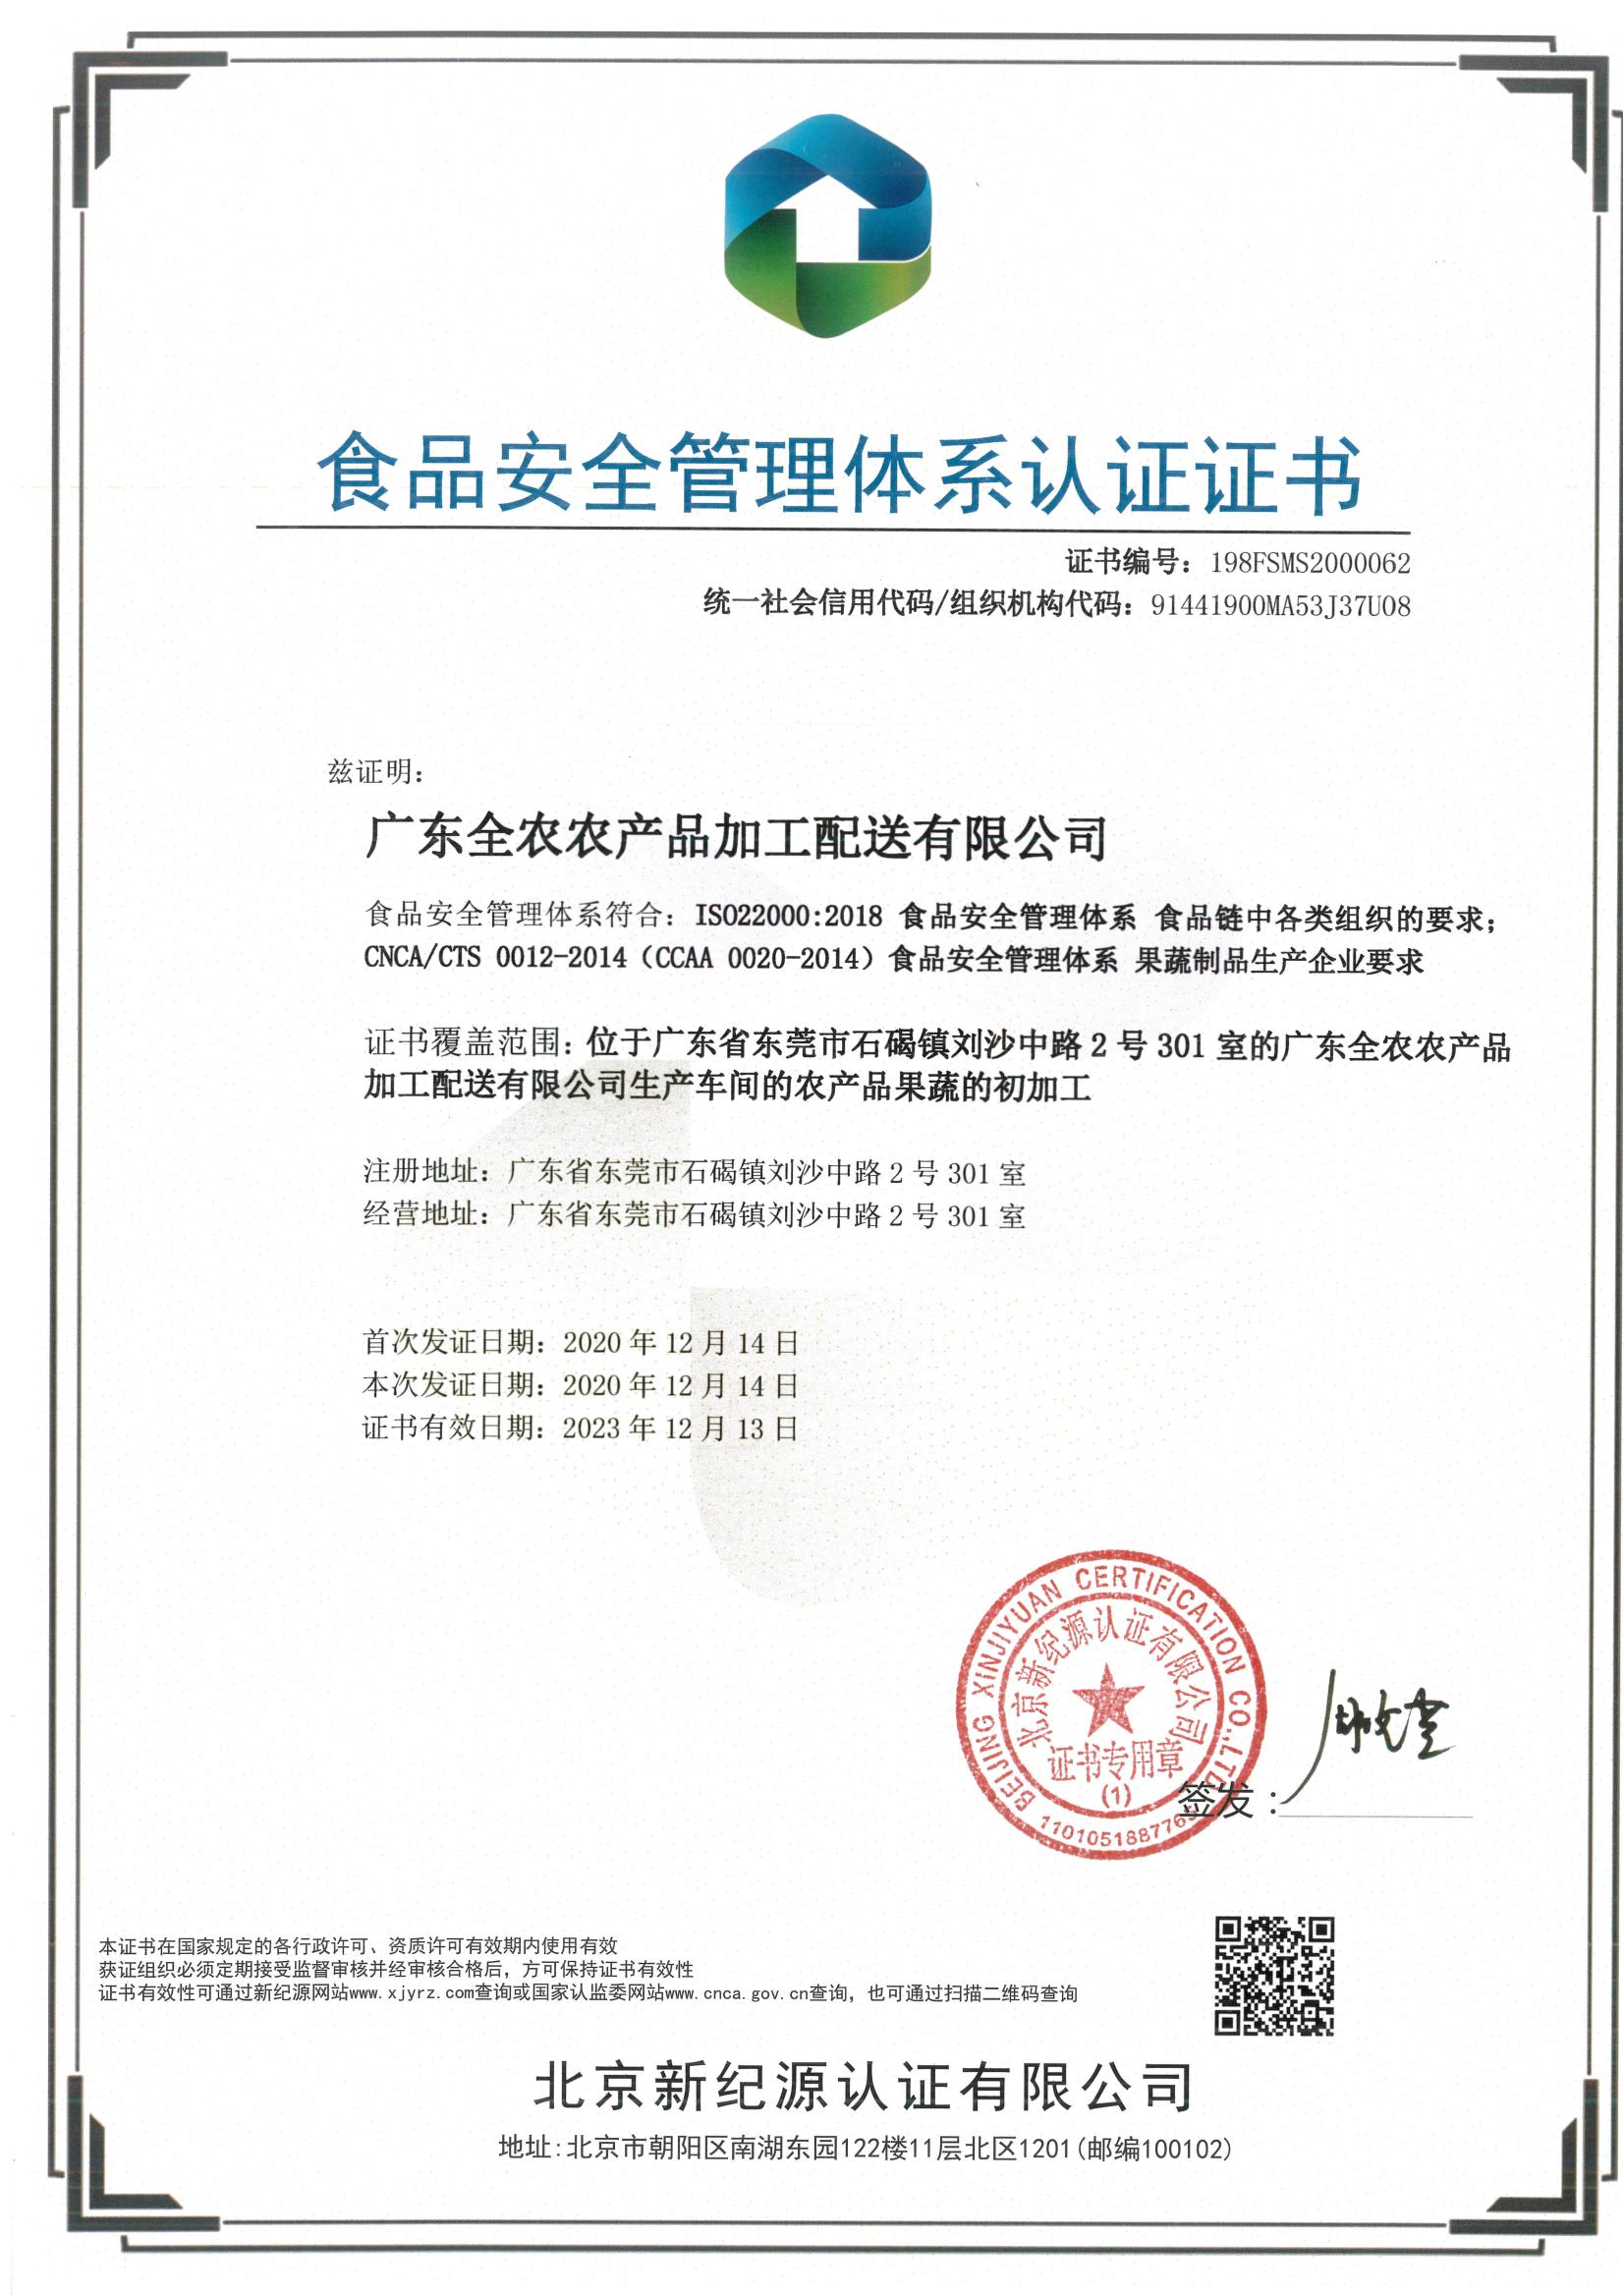 食物清静治理系统认证证书（乐橙国际加工配送）